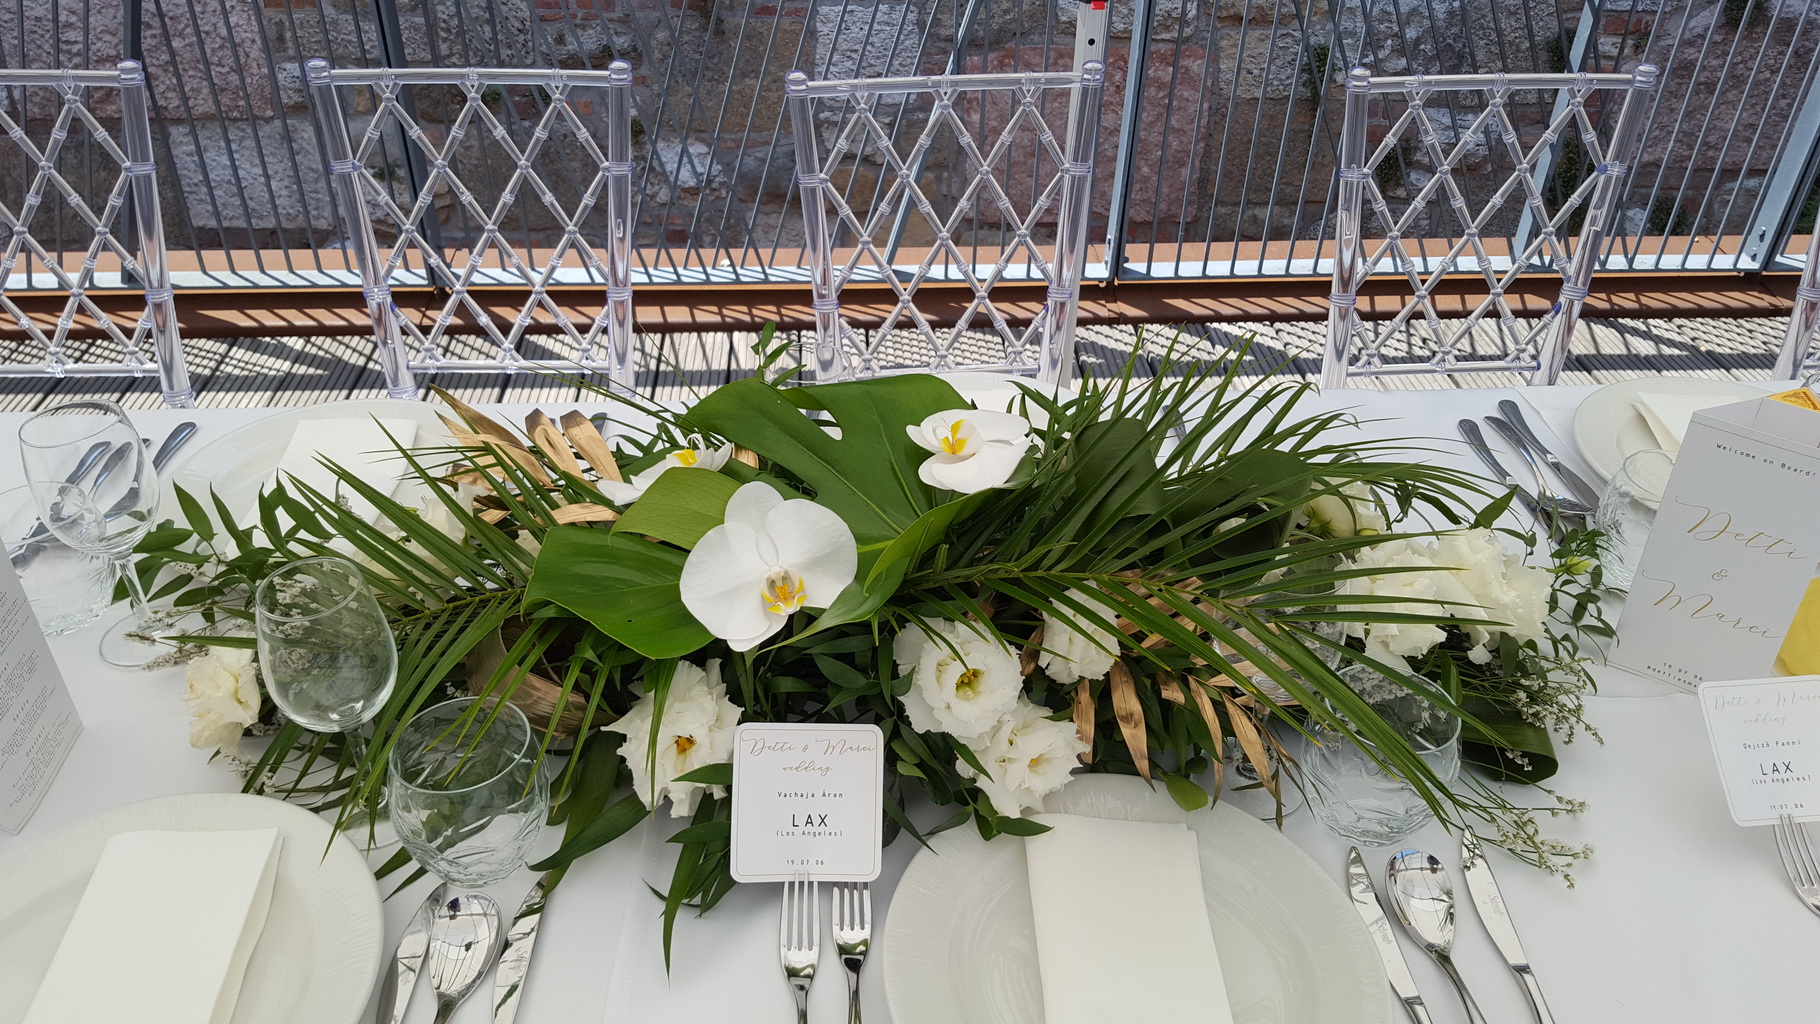 Virágküldés Budapest - Hosszúkás esküvői asztaldísz, Bazaar Eclektica Étterem, Budapest (phalaenopsis orhidea, lizianthus, monstera, pálmalevél, fehér, zöld, arany)